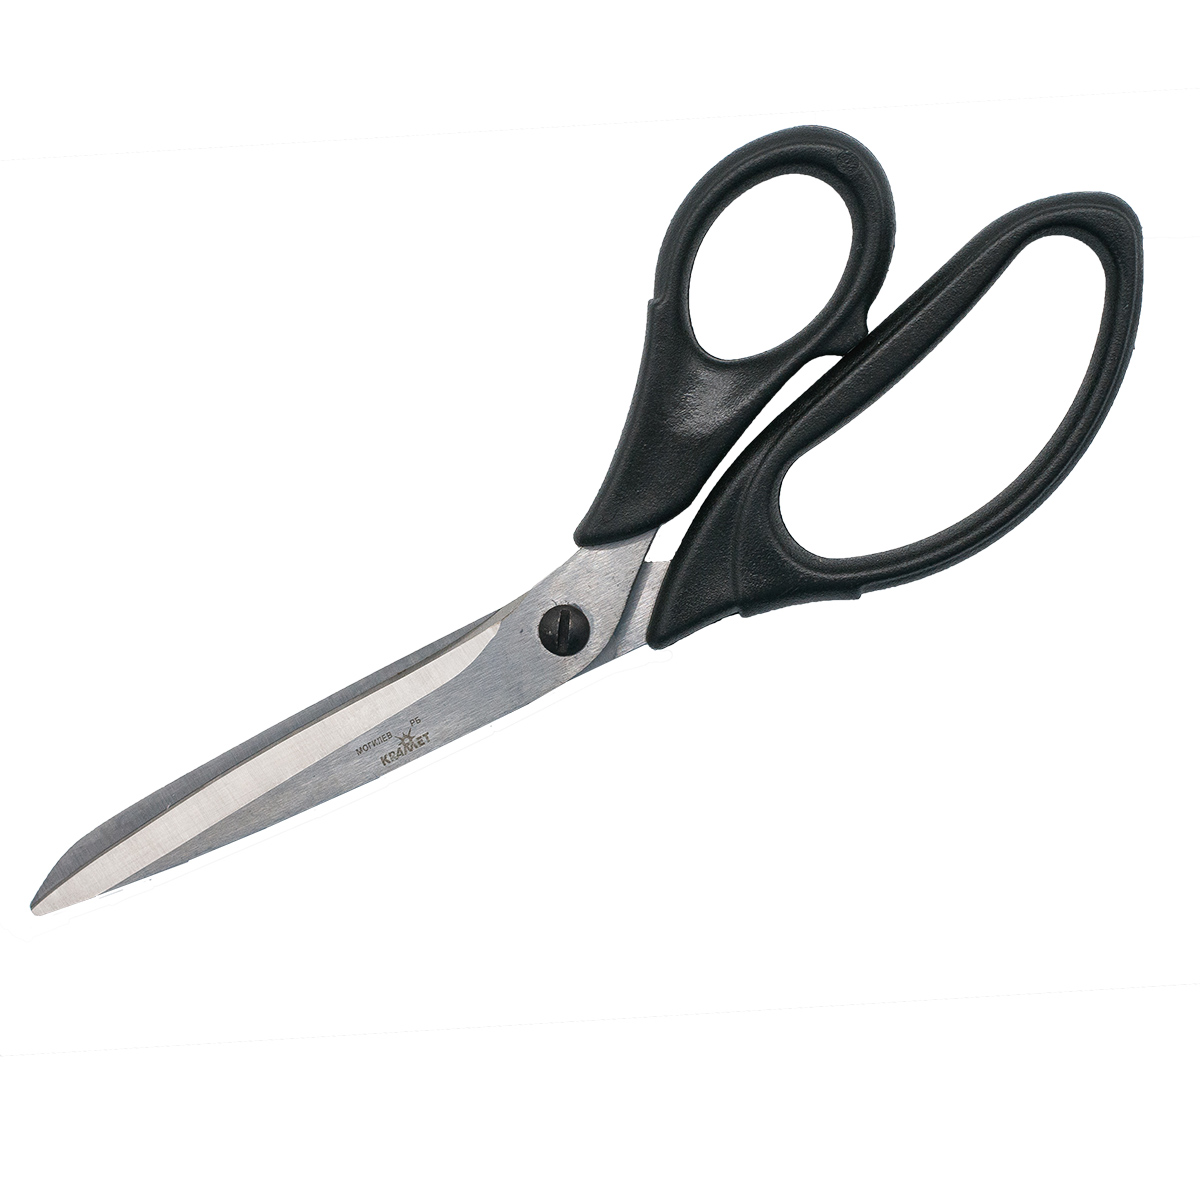 Ножницы портновские KARMET стальные пластиковые ручки винт для регулировки хода 23 см 484232 - фото 2